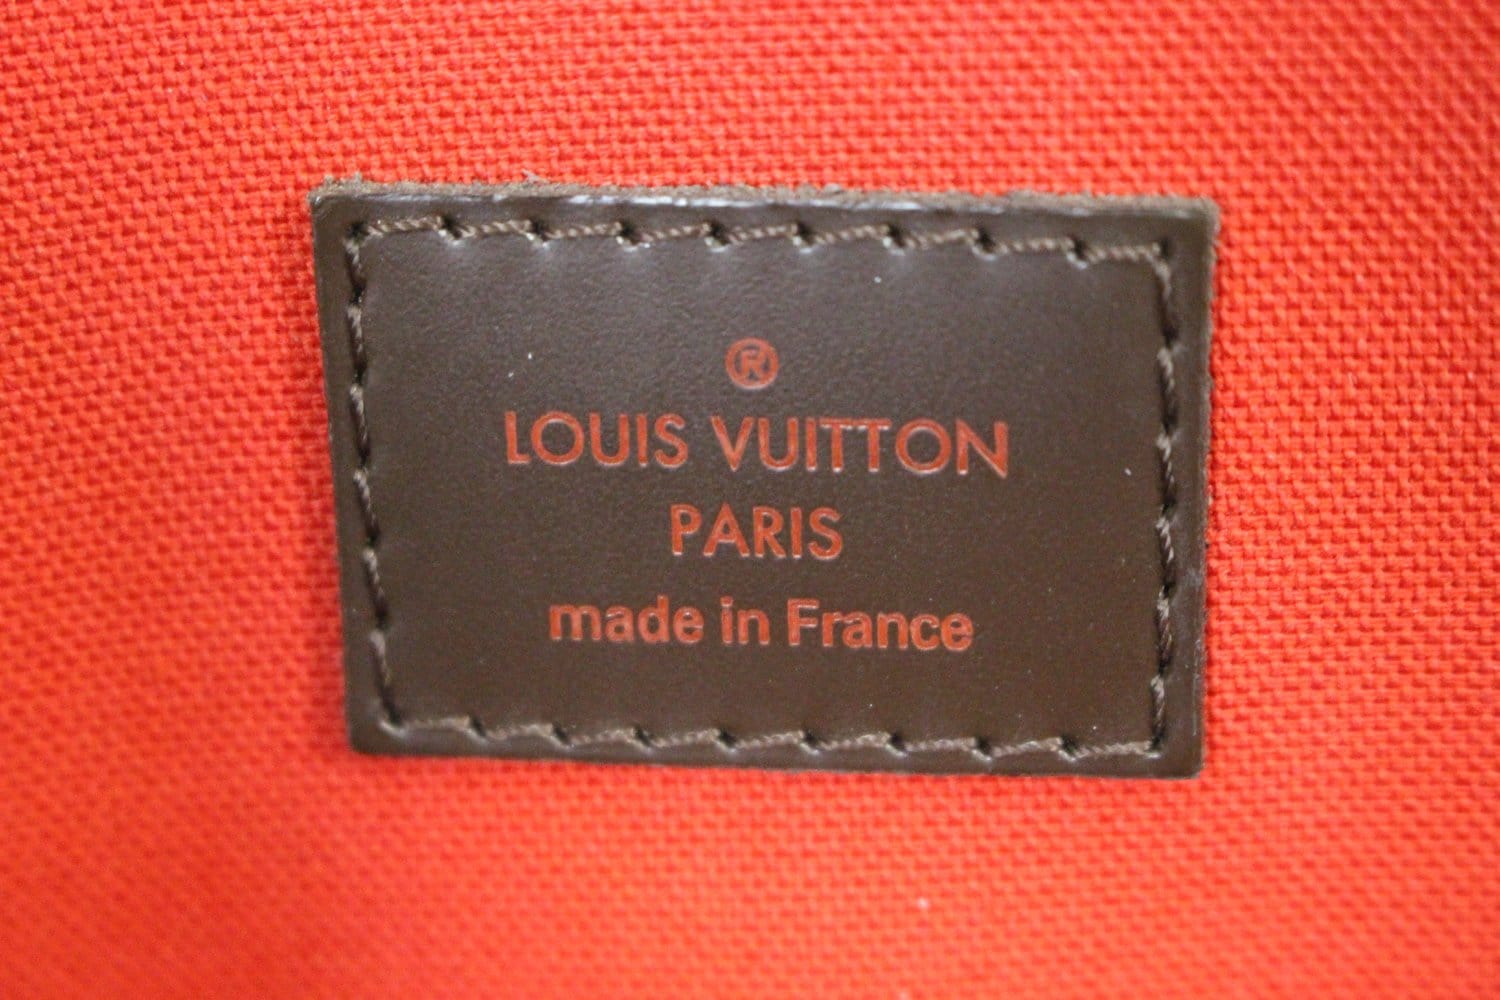 Louis Vuitton Verona – The Brand Collector